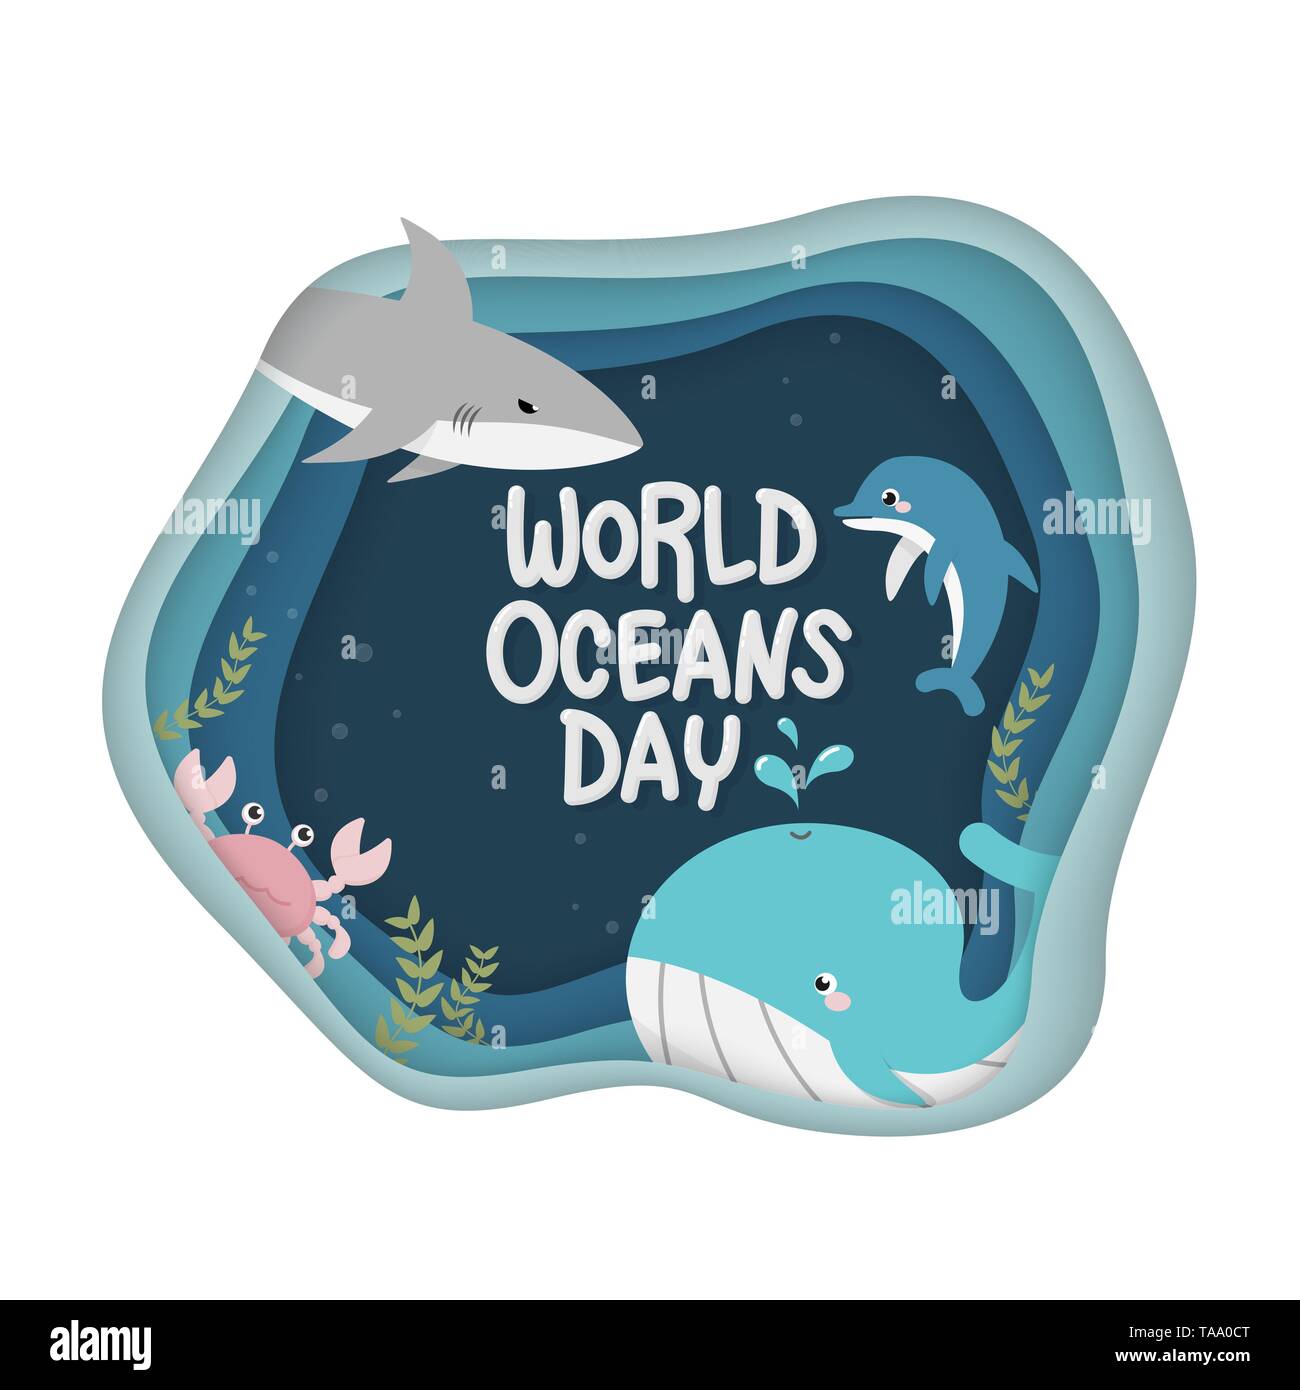 Welttag der Ozeane. Vektor der Unterwasserwelt für die Feier engagierten schützen, und die Erhaltung der Weltmeere, Wasser, Ökosystem und die Öffentlichkeit o Informieren Stock Vektor